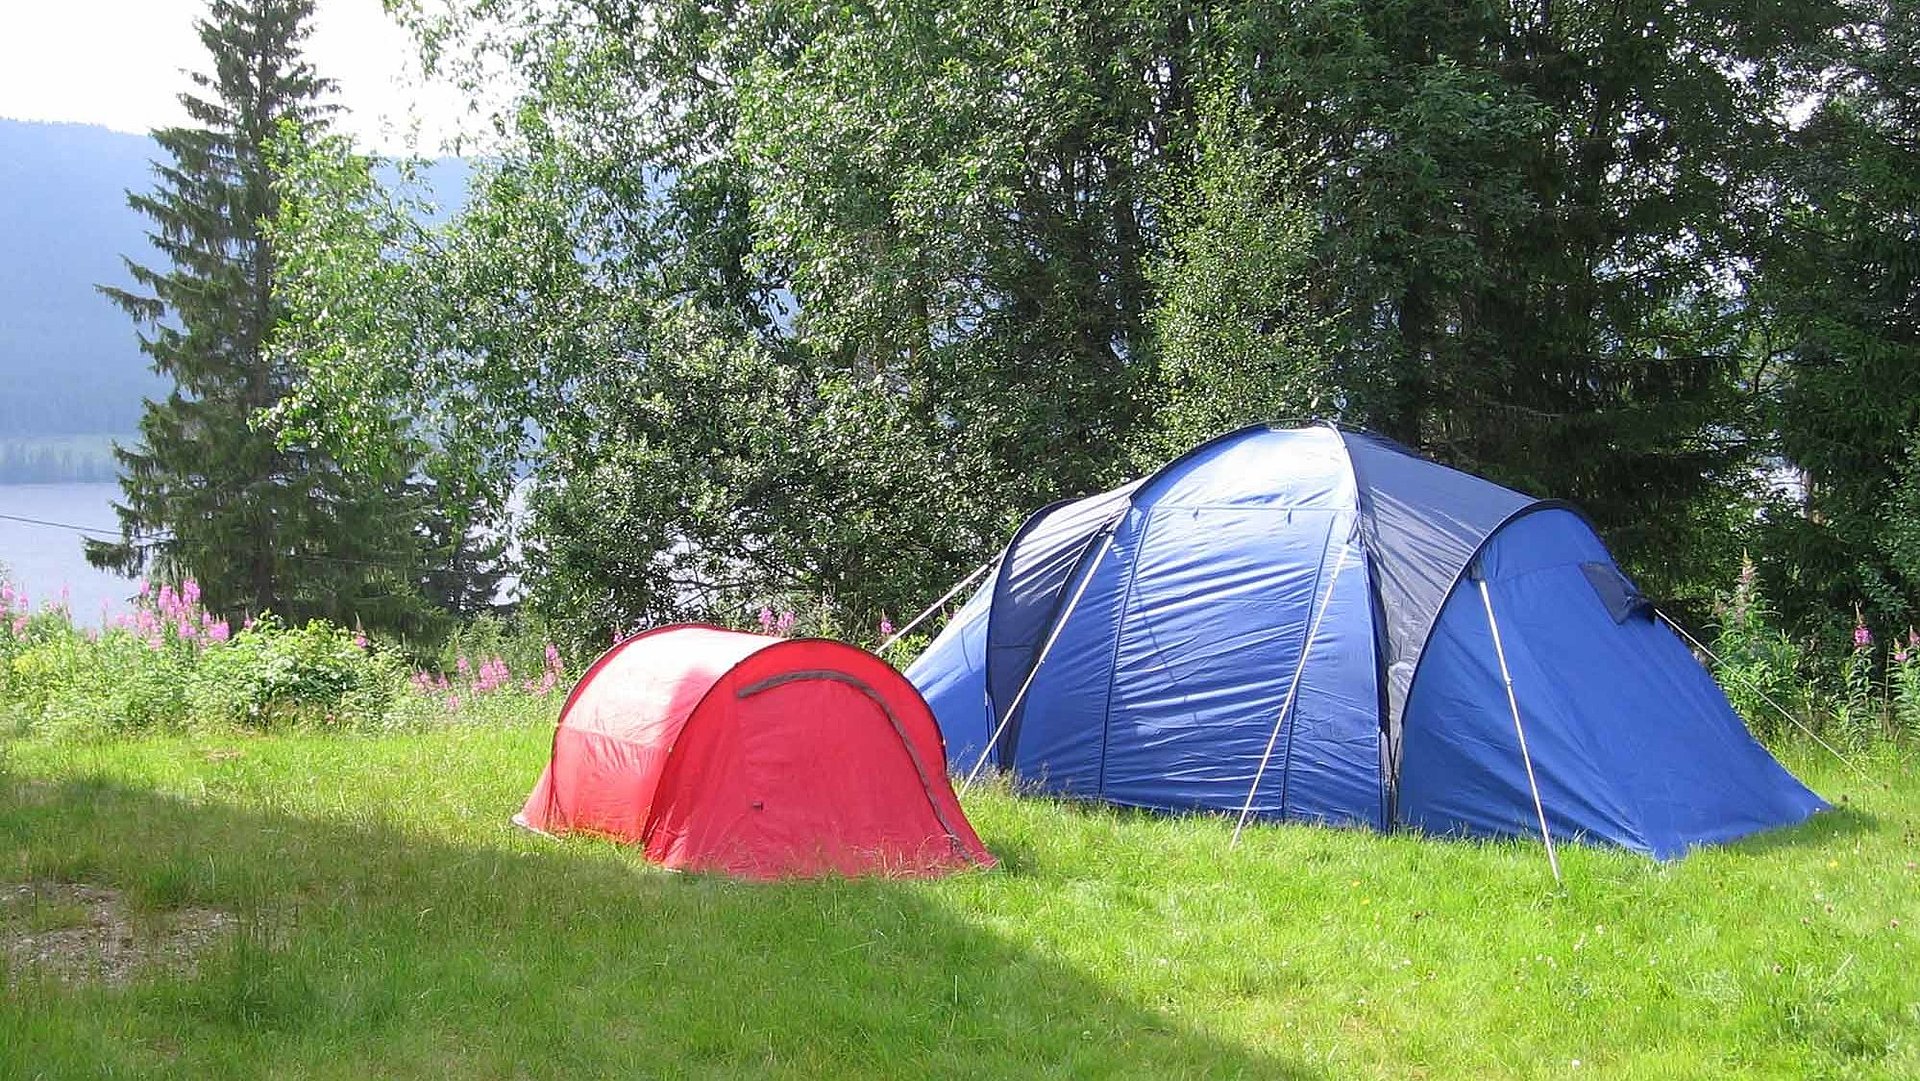 Camping im Frankenwald - Zelte stehen auf einer Wiese